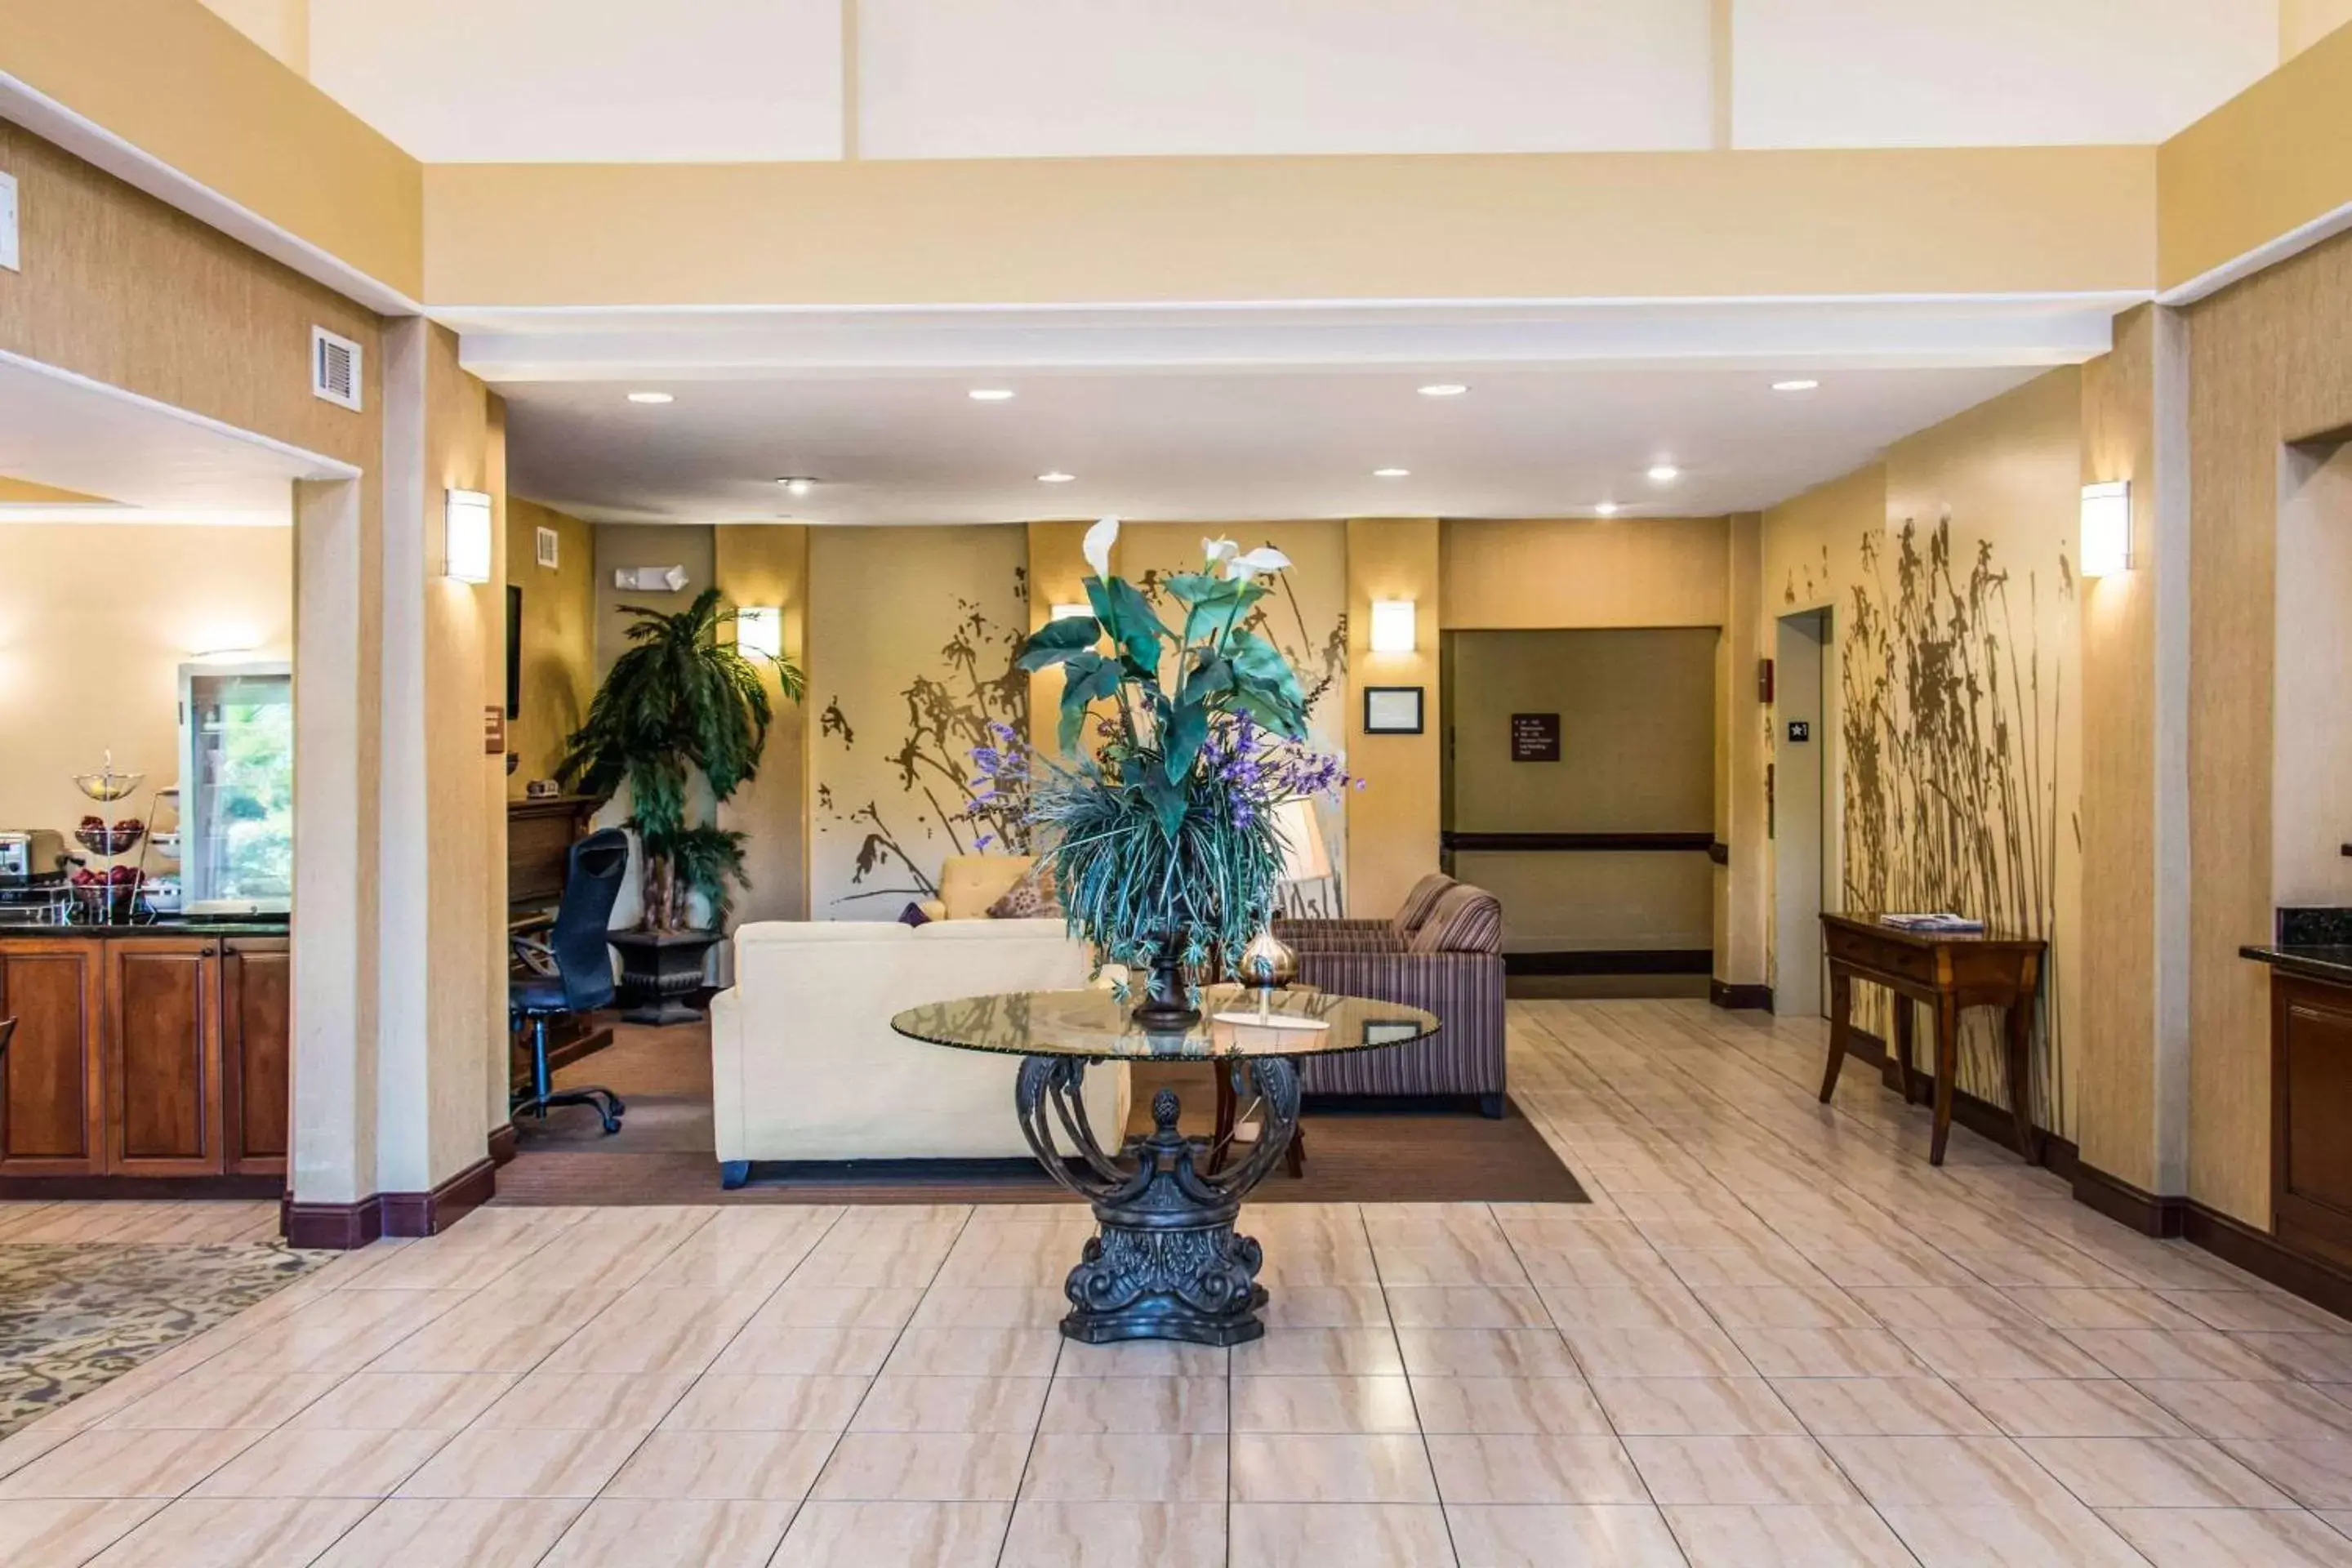 Lobby or reception, Lobby/Reception in Sleep Inn & Suites Pooler